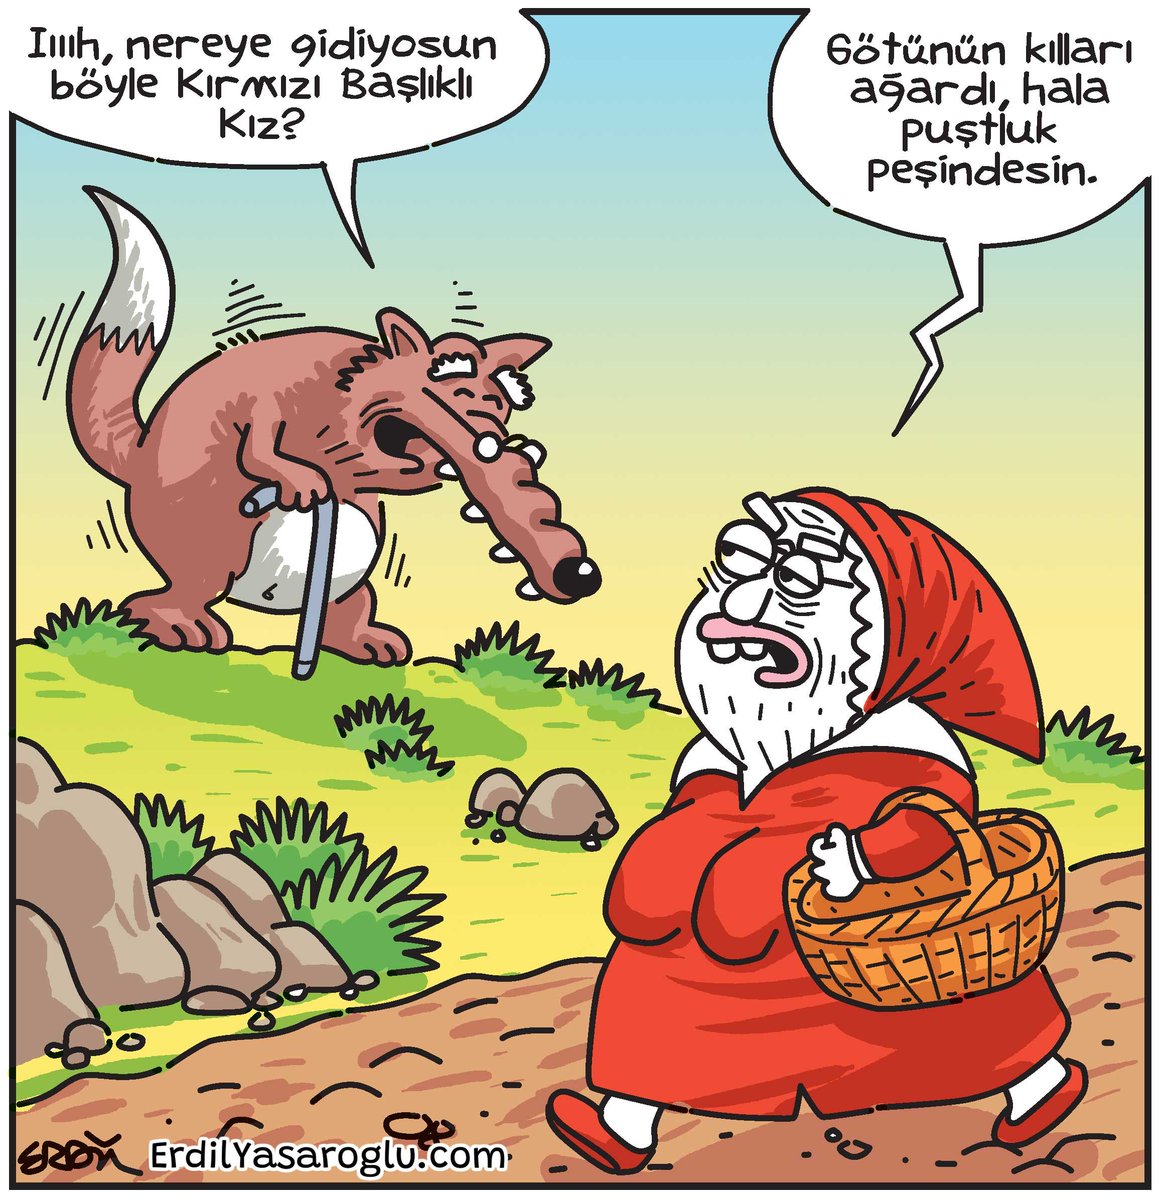 Kırmızı Başlıklı Kız... İyi Pazarlar 🙃
.
#komikaze #karikatür #komik #mizah #erdil #erdilyasaroglu #KırmızıBaşlıklıKız #masal #kurt